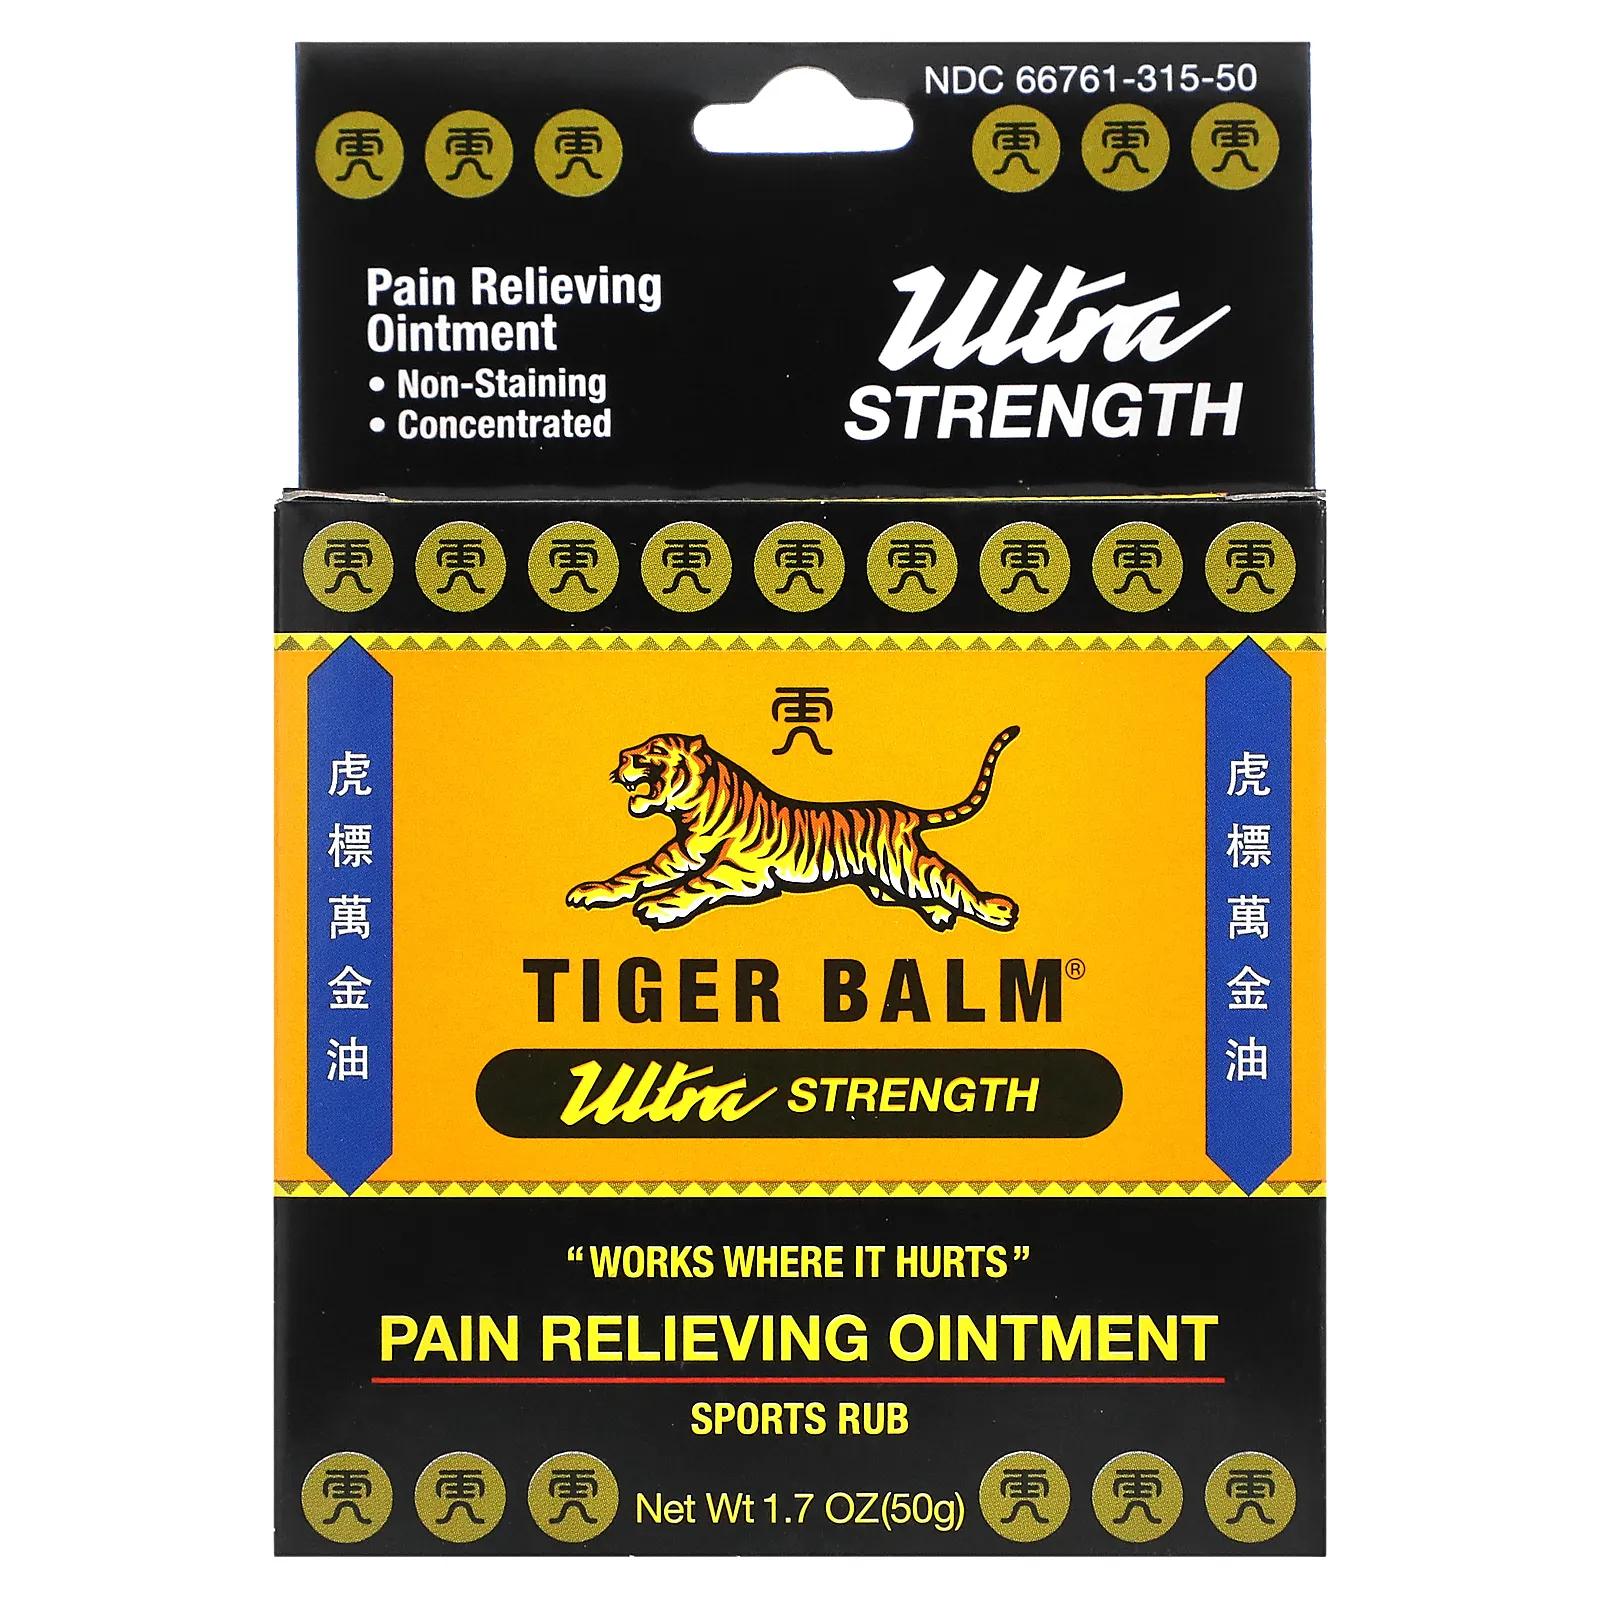 Tiger Balm Мазь для снятия боли ультра-сила 1,7 унции (50 г) tiger balm red ointment 1 fl oz 30 g